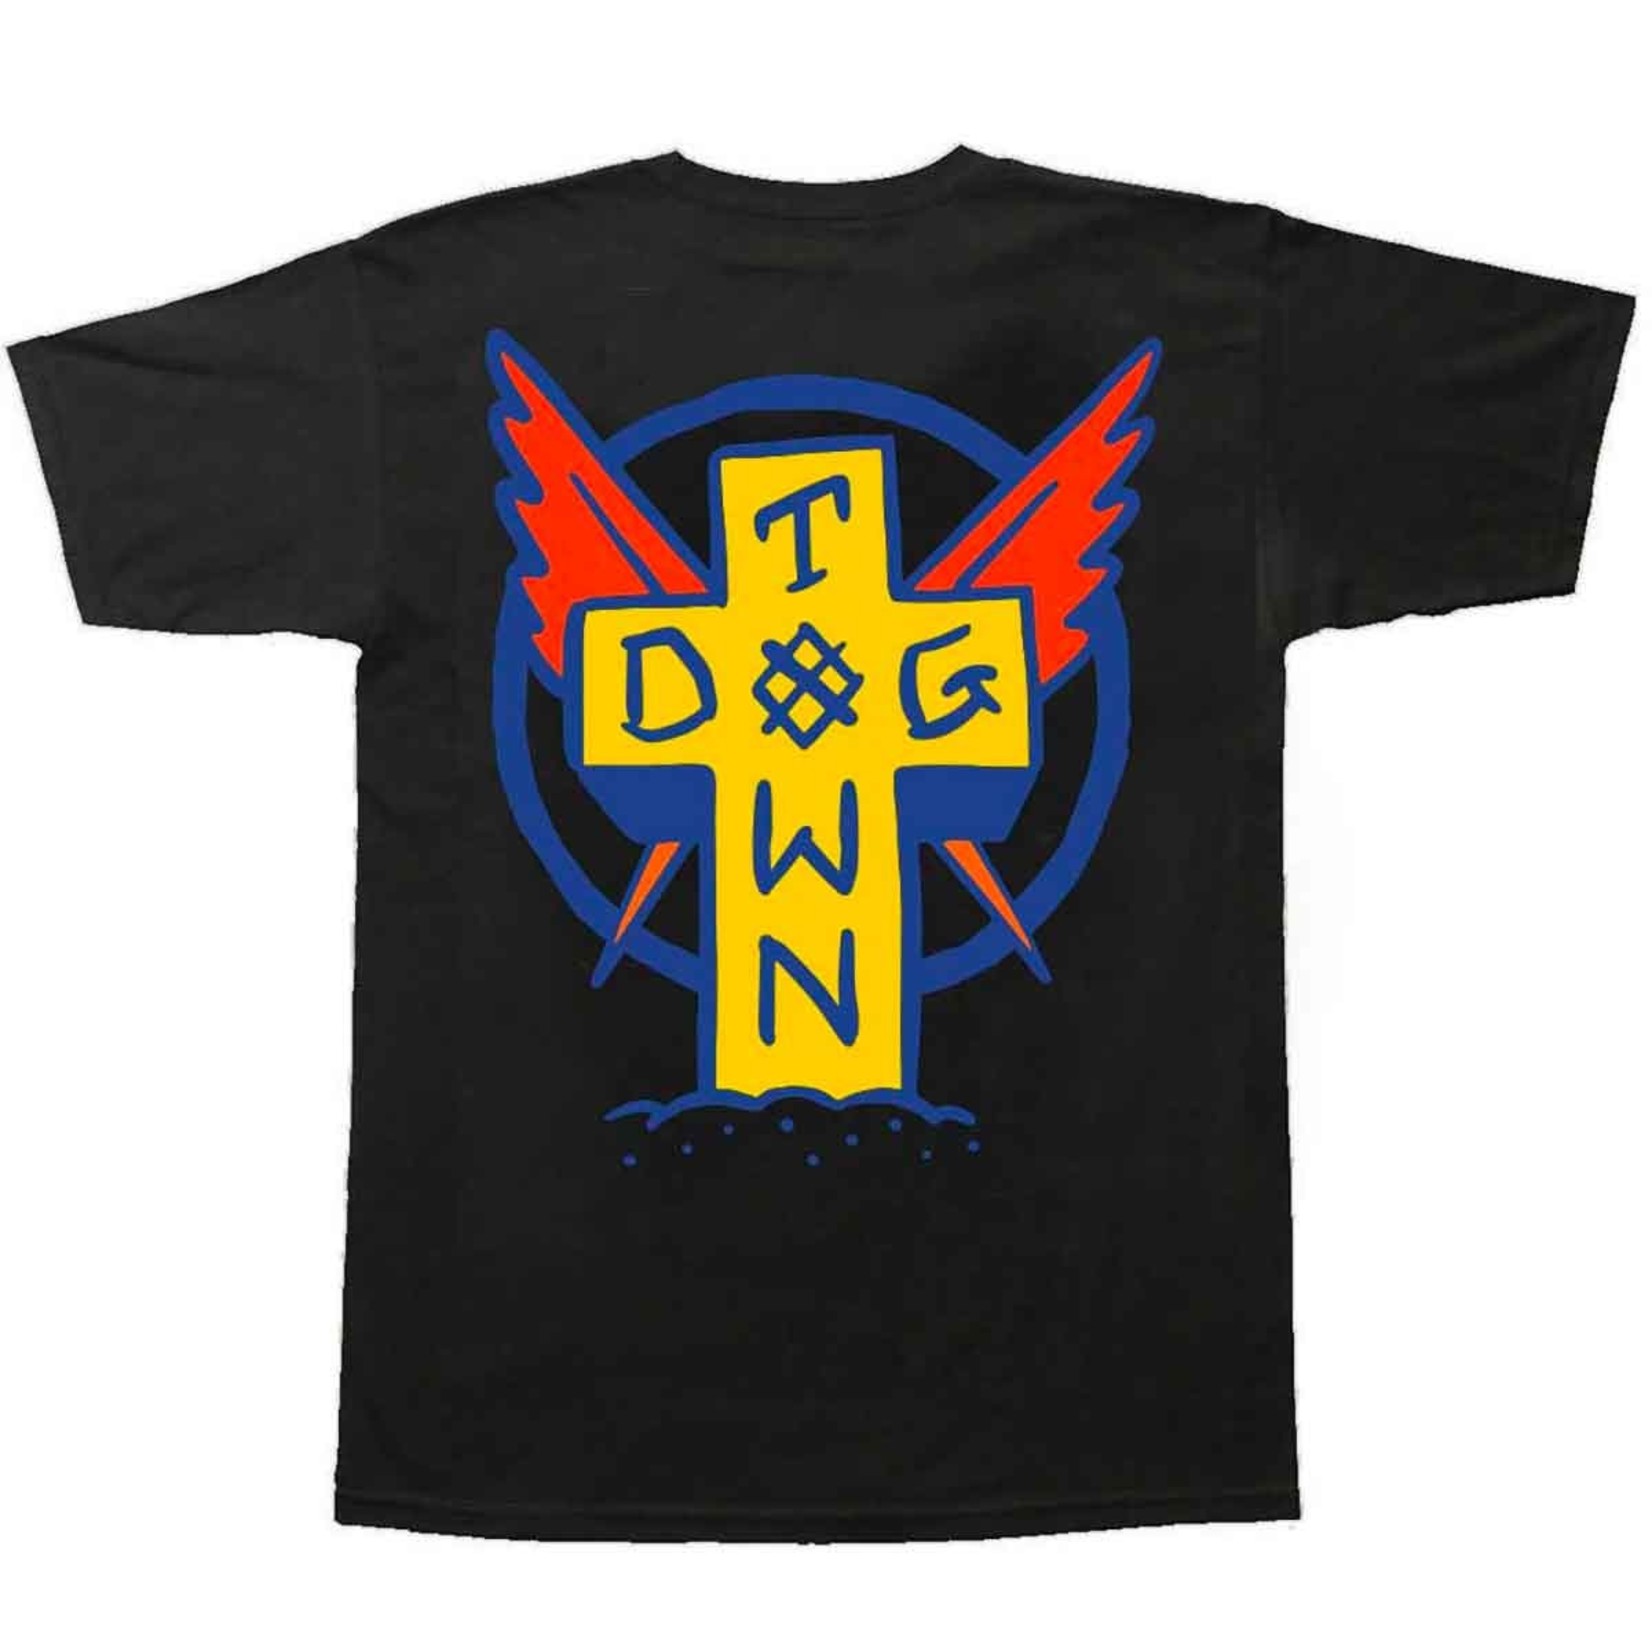 Dogtown Dogtown Scratch Cross T-Shirt - Black